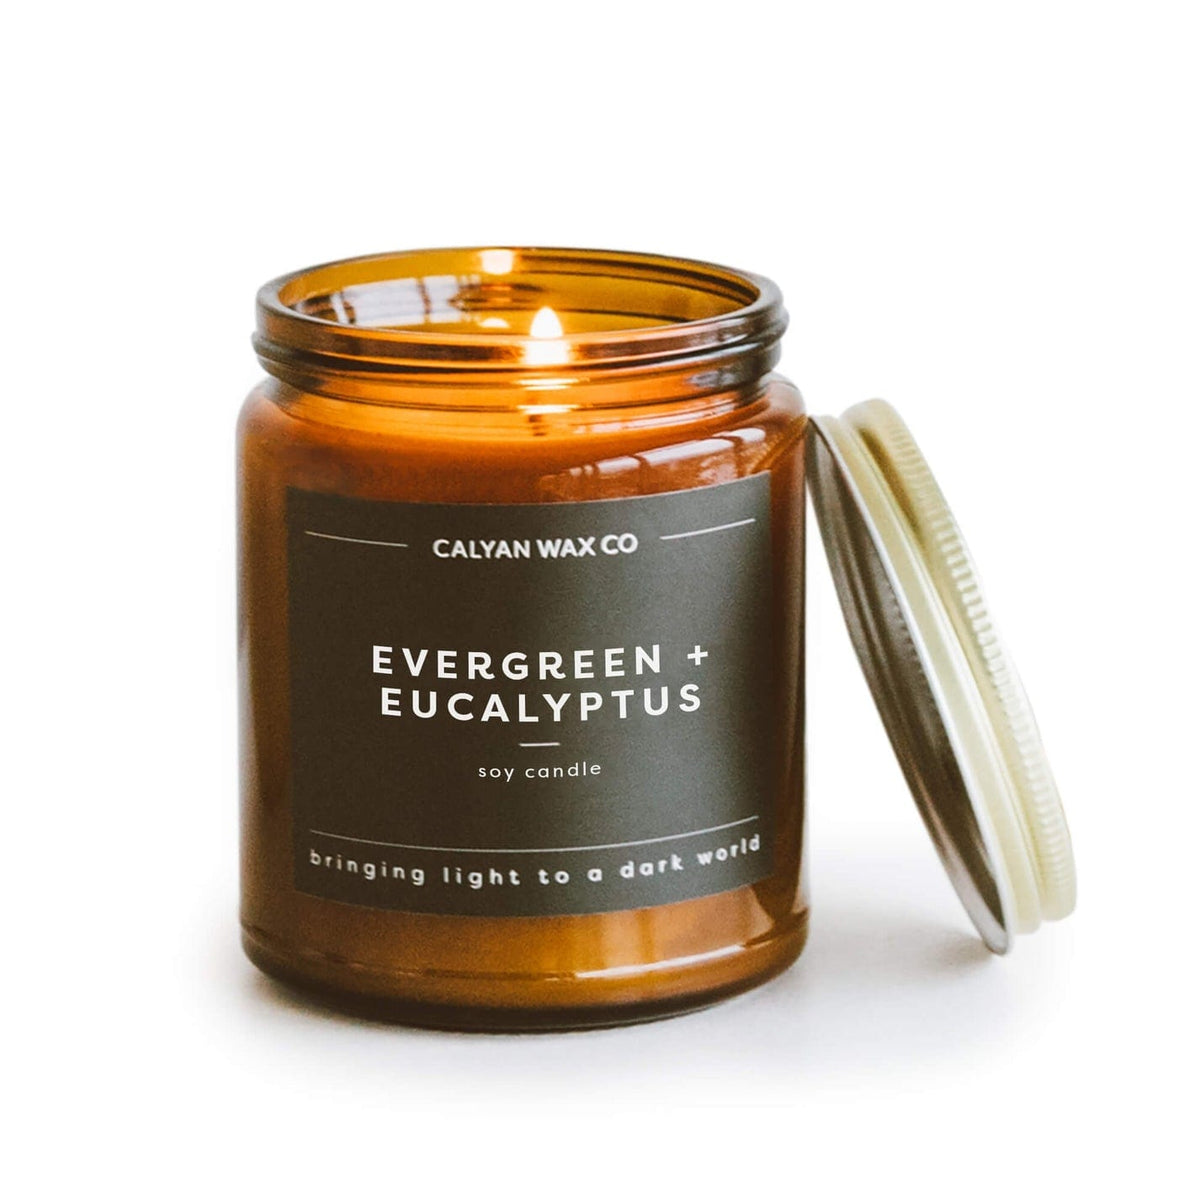 Calyan Wax Co. Evergreen + Eucalyptus Soy Candle